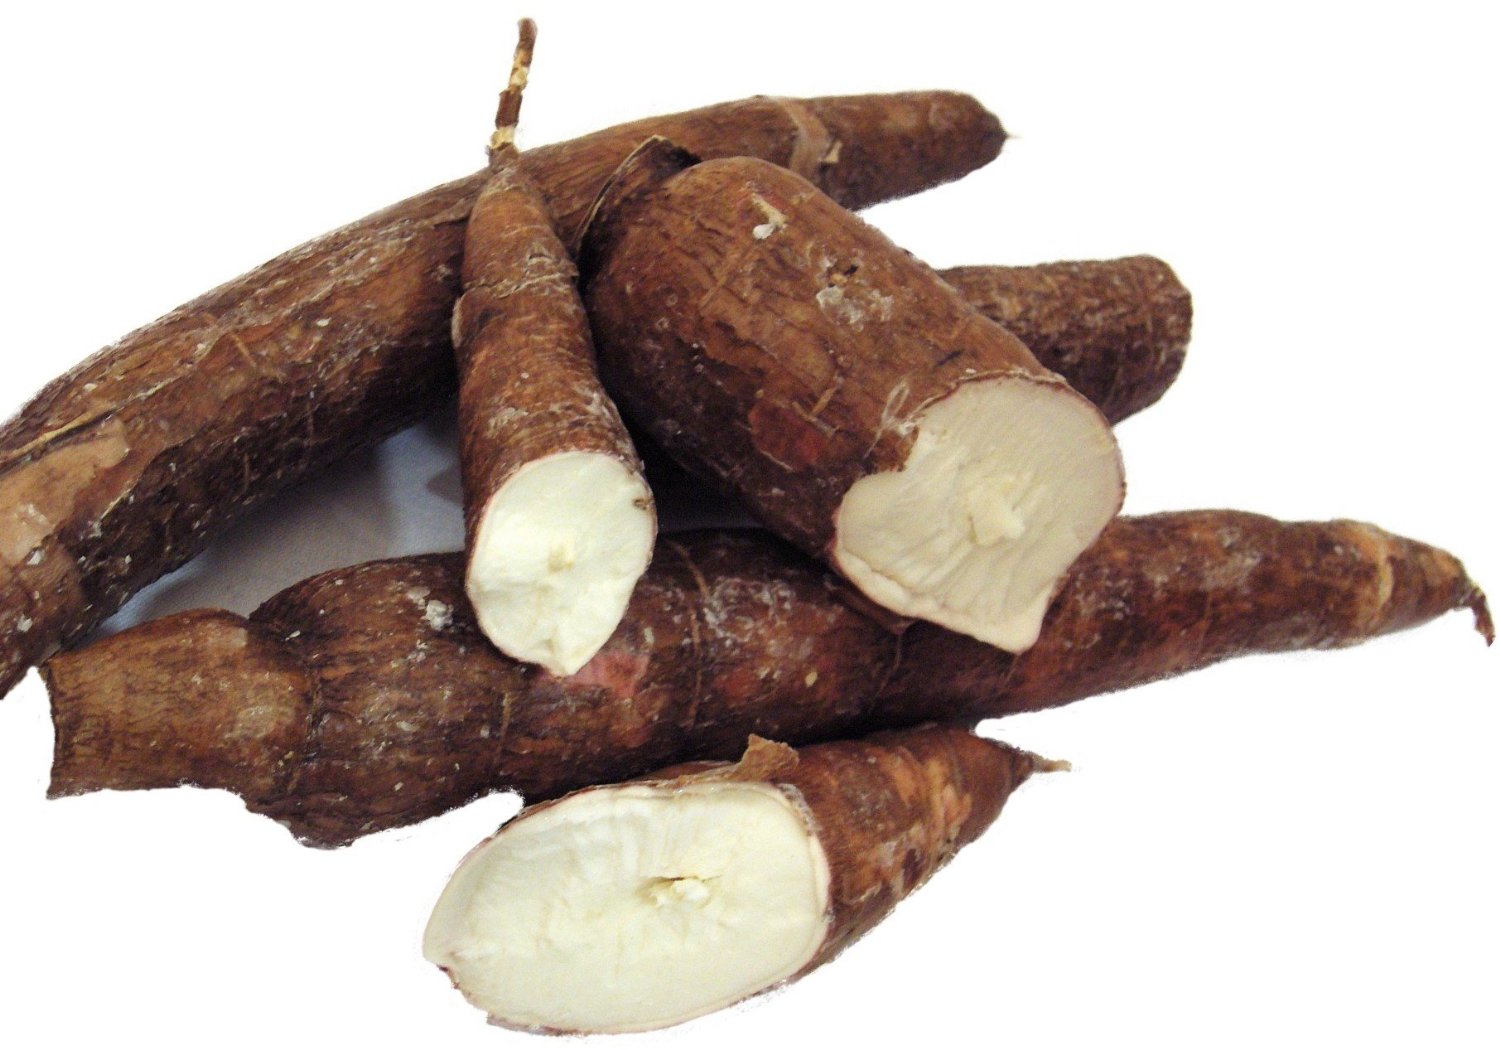 Cassava tubers are long, brown roots. One is broken open revealing broken interior.